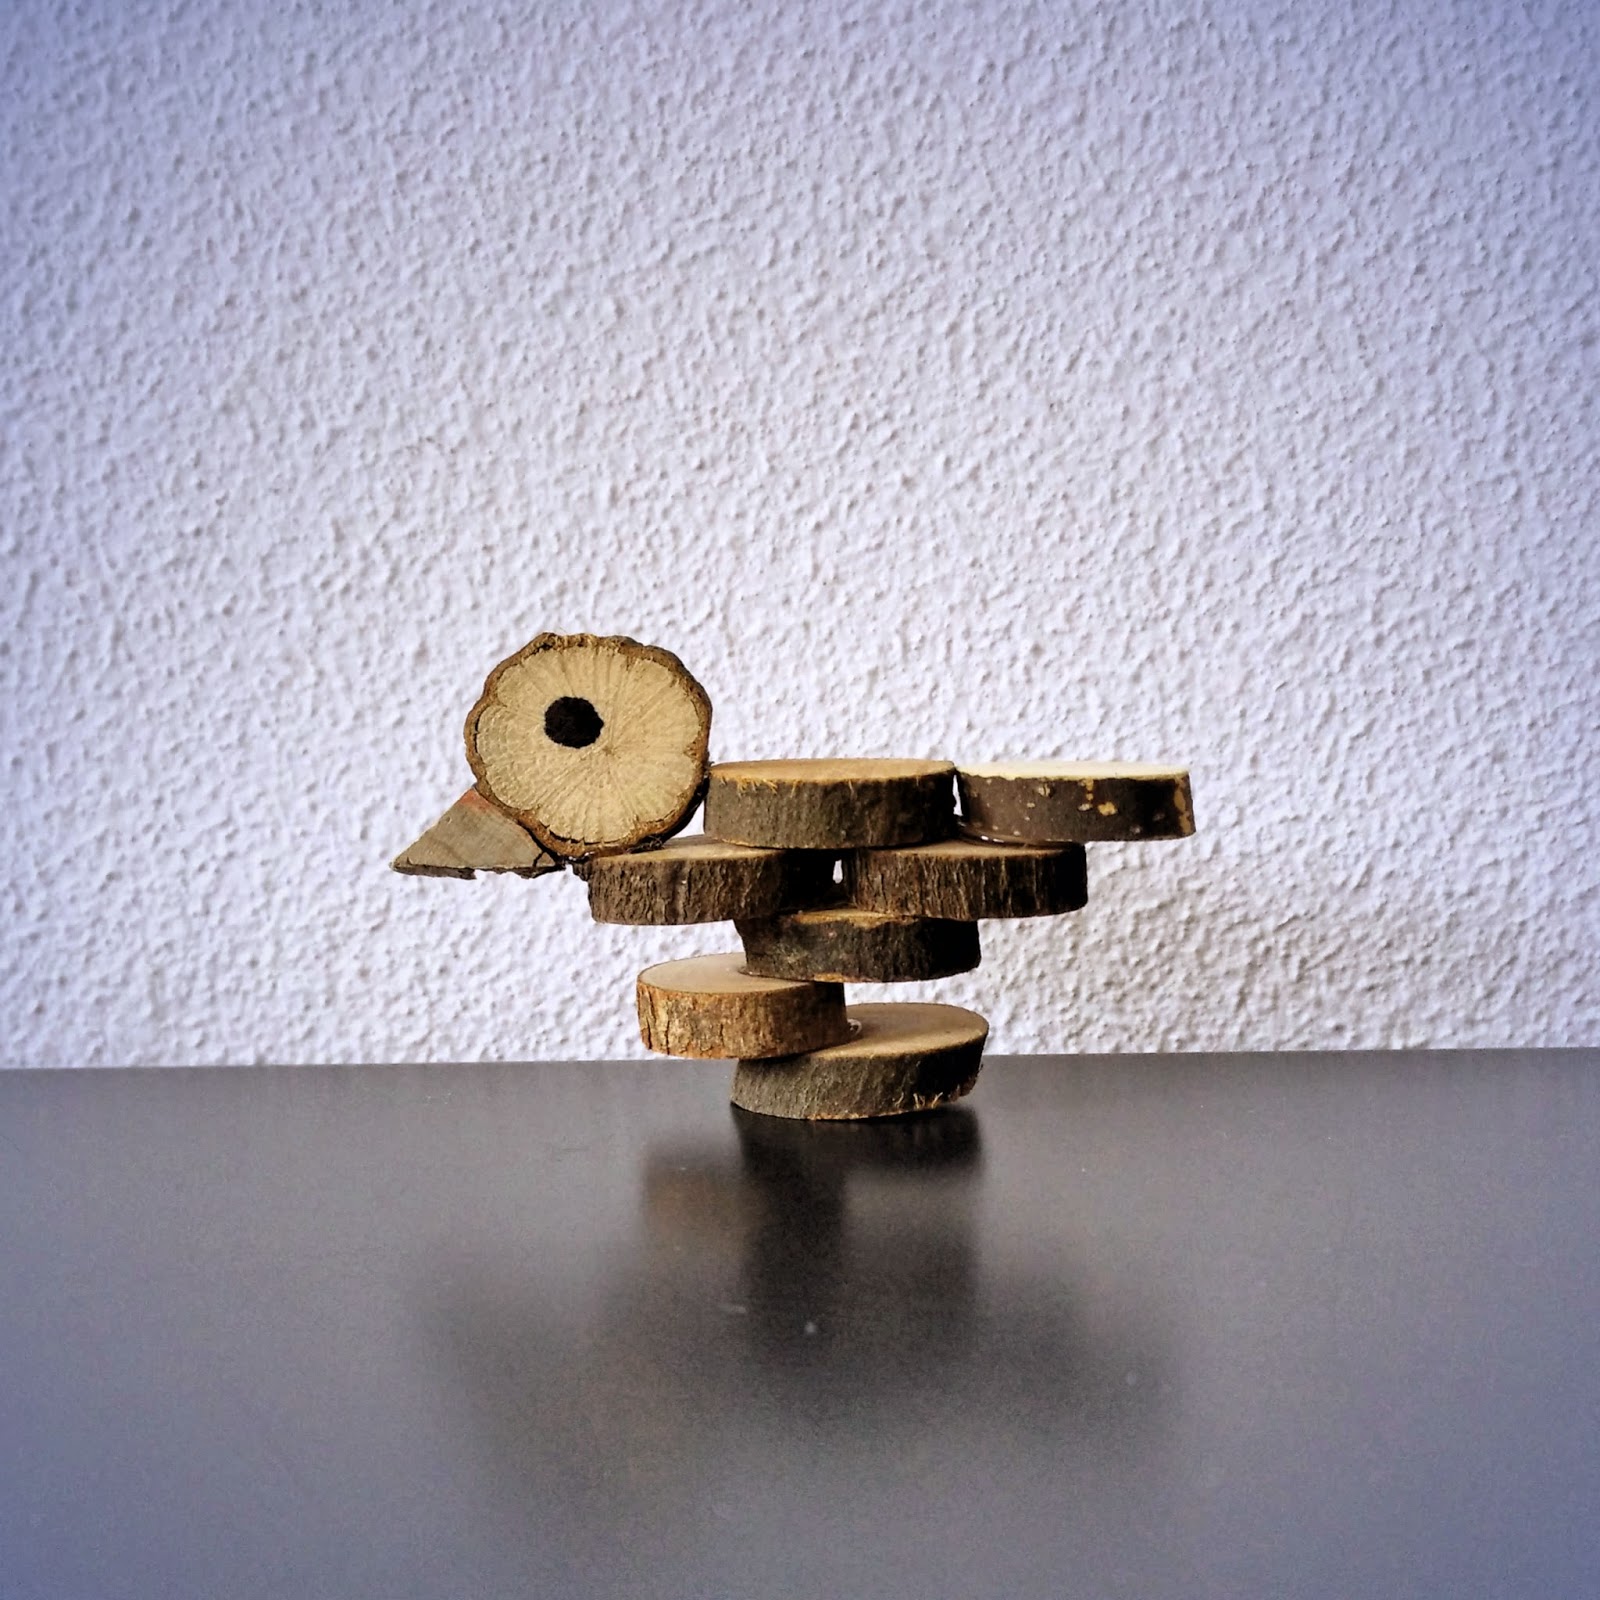 Bot Grillig de ober Knutselen met houtplakjes: Vogeltje - Houtspel - Duurzaam houten speelgoed